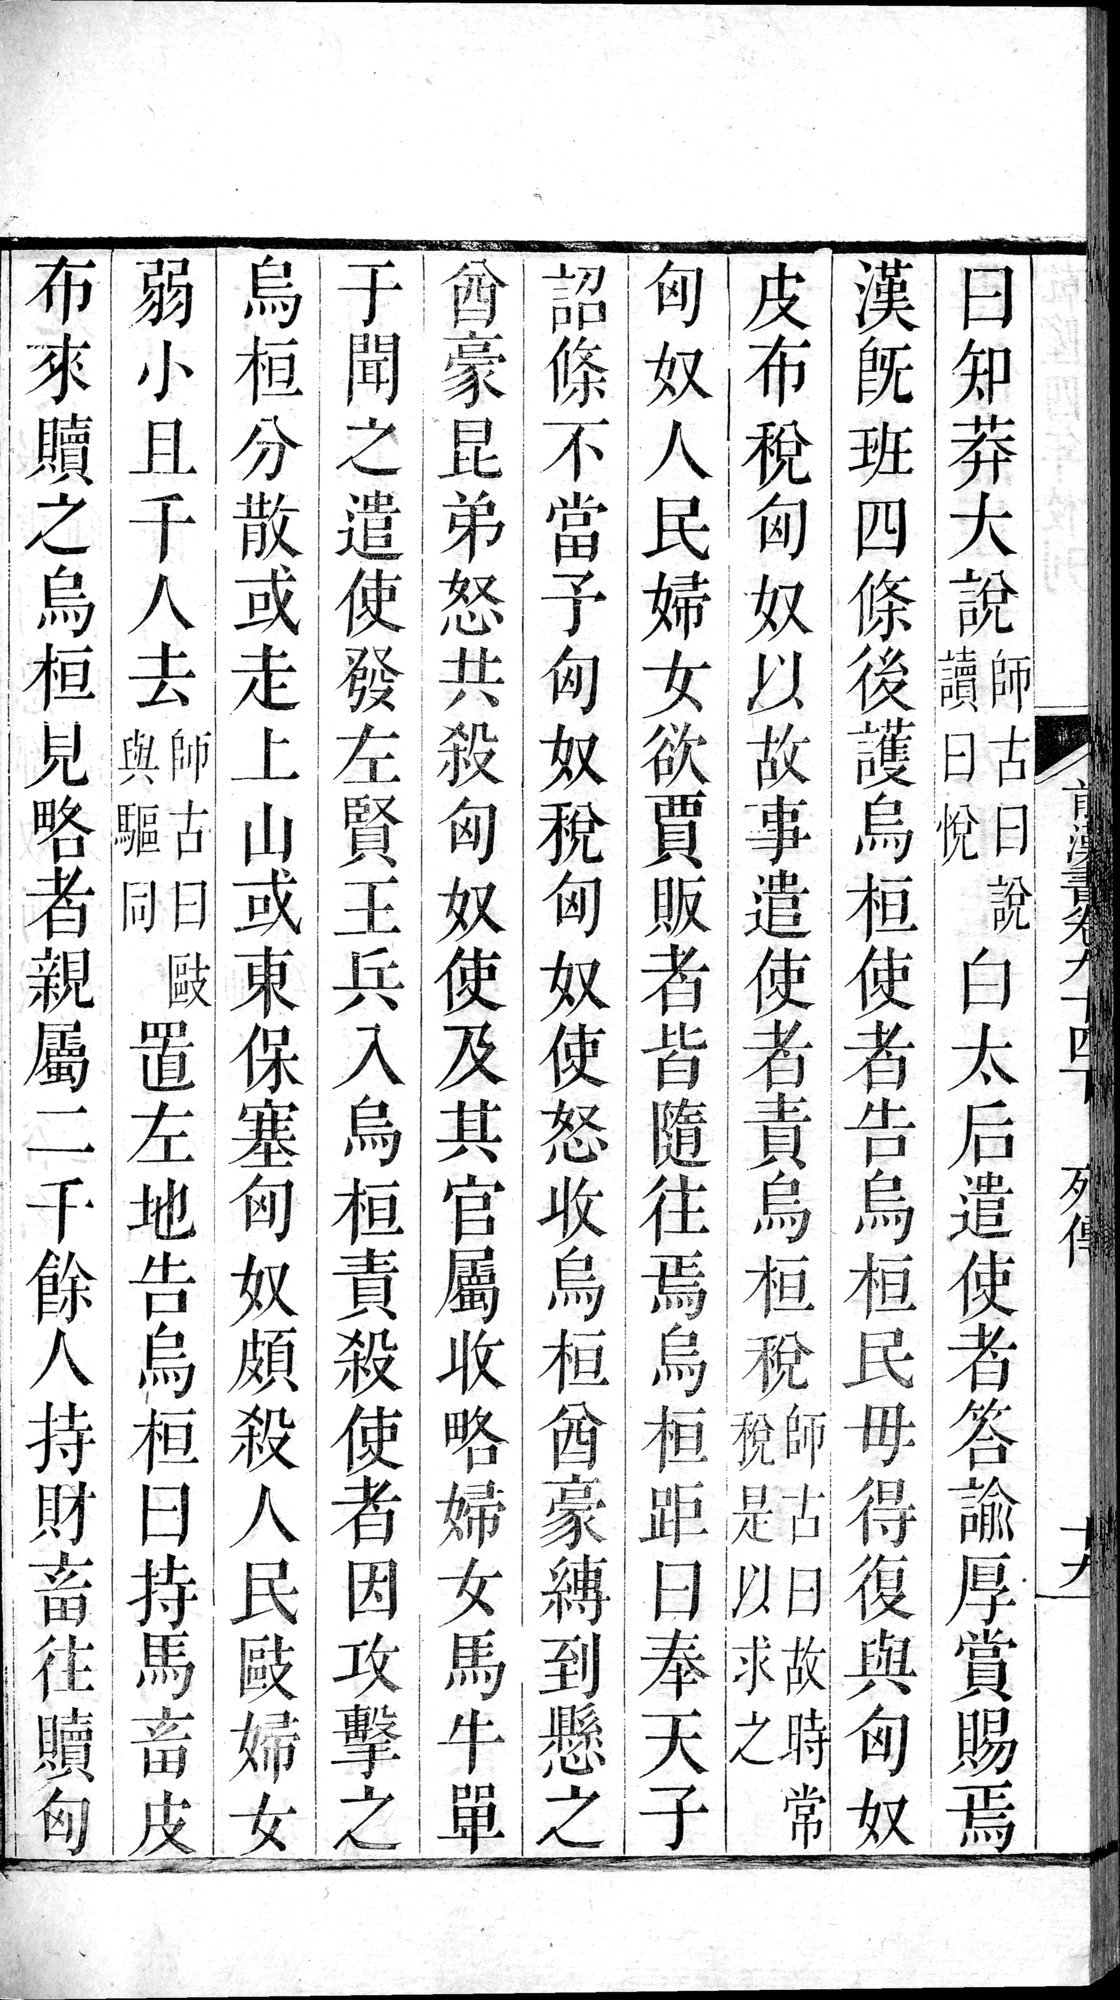 前漢書 : vol.94 bottom / Page 38 (Grayscale High Resolution Image)